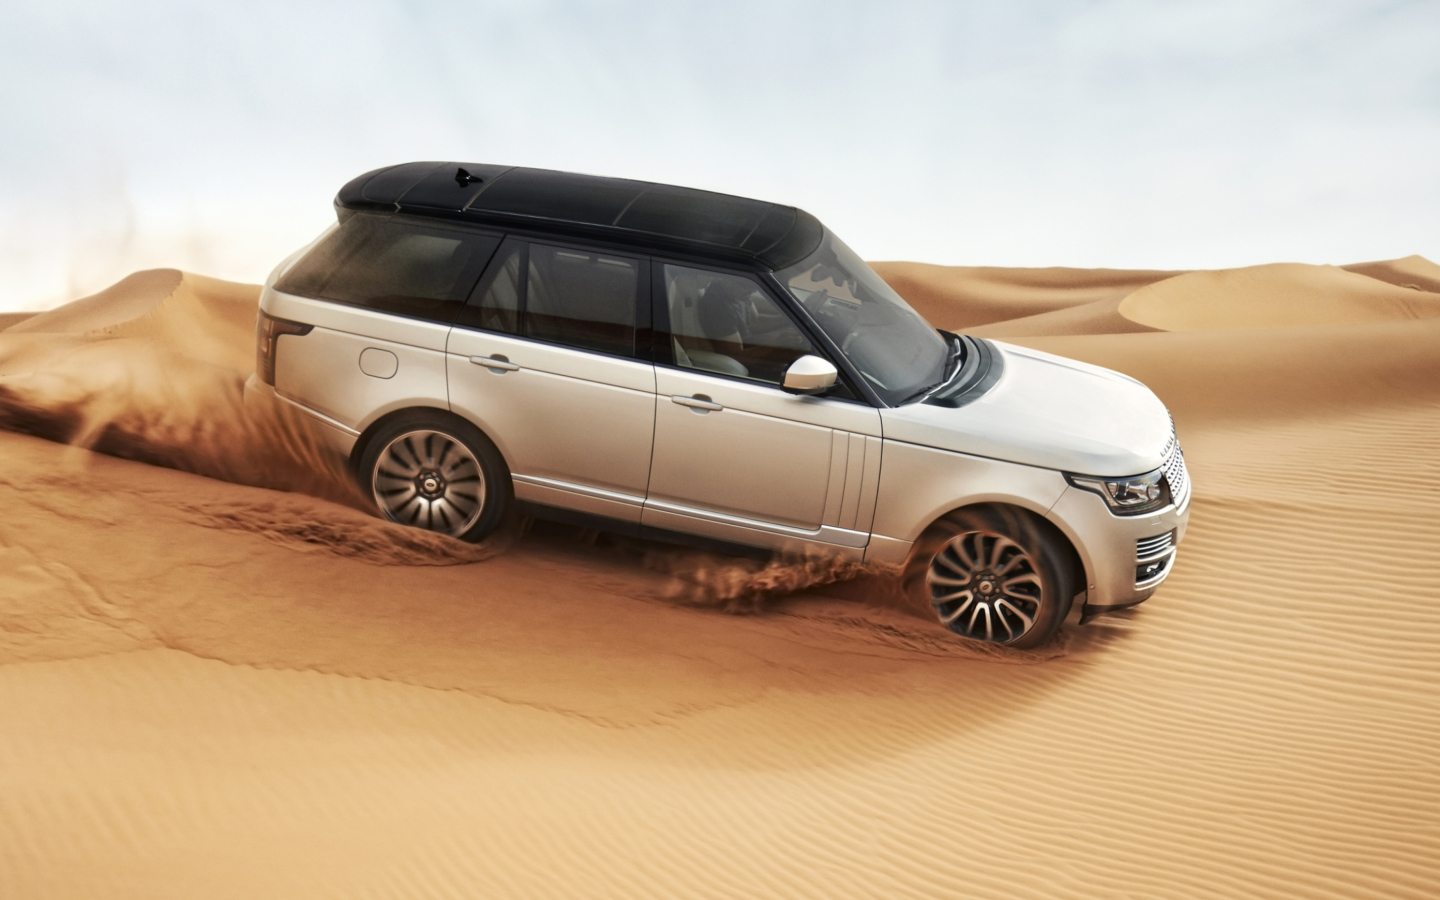 Range Rover In Desert wallpaper 1440x900